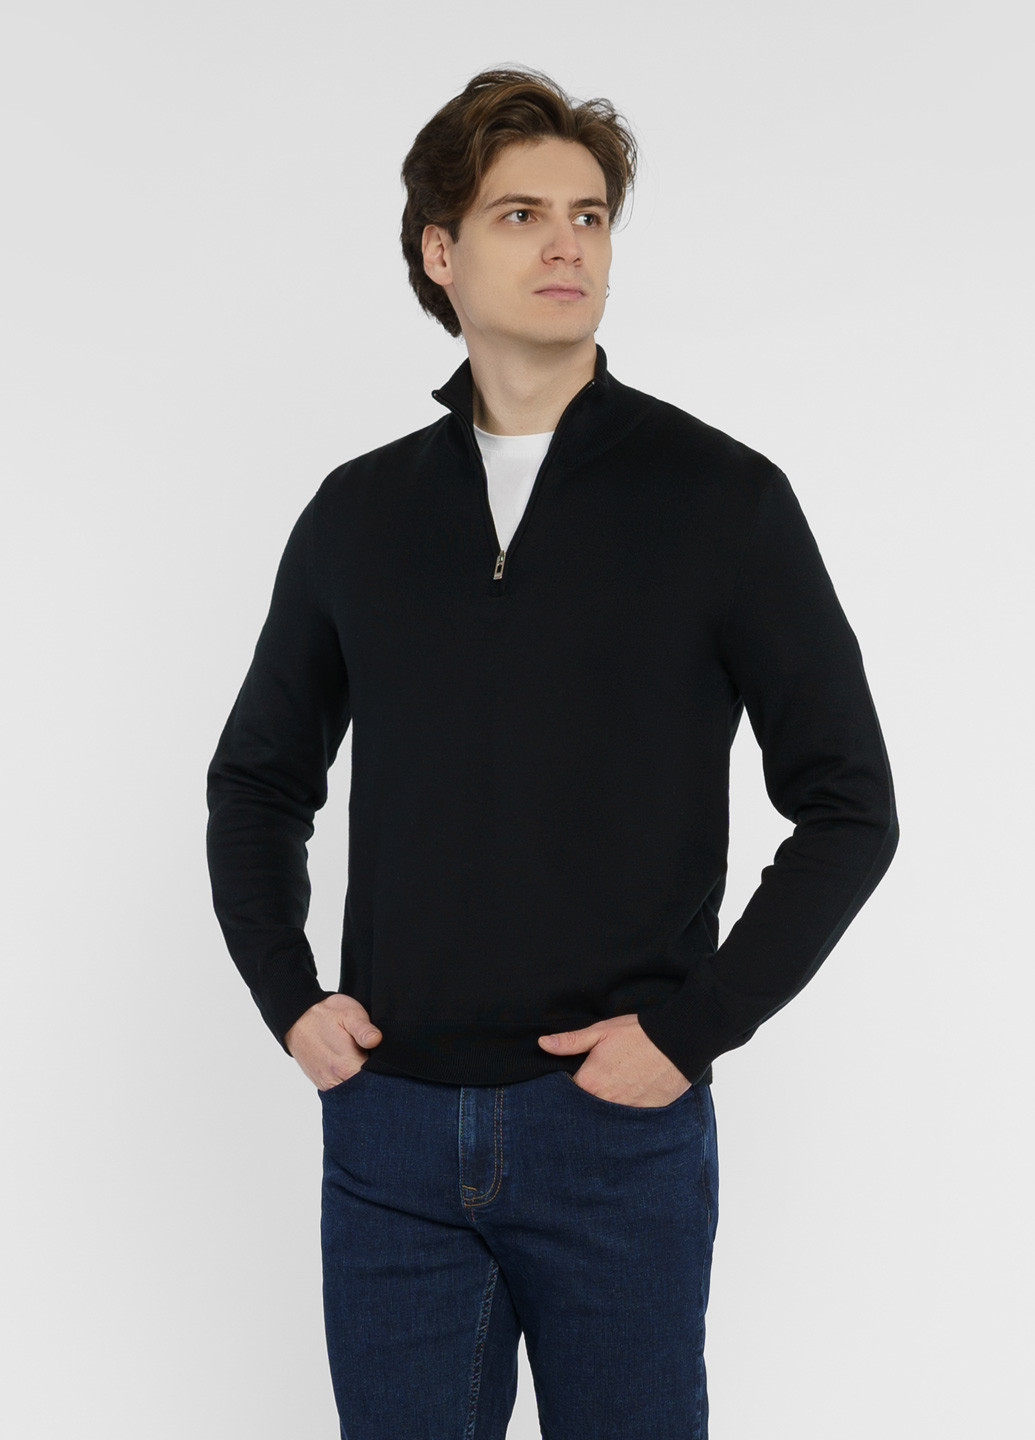 Черный демисезонный свитер мужской черный Arber Zipper-Neck N-AVT-74